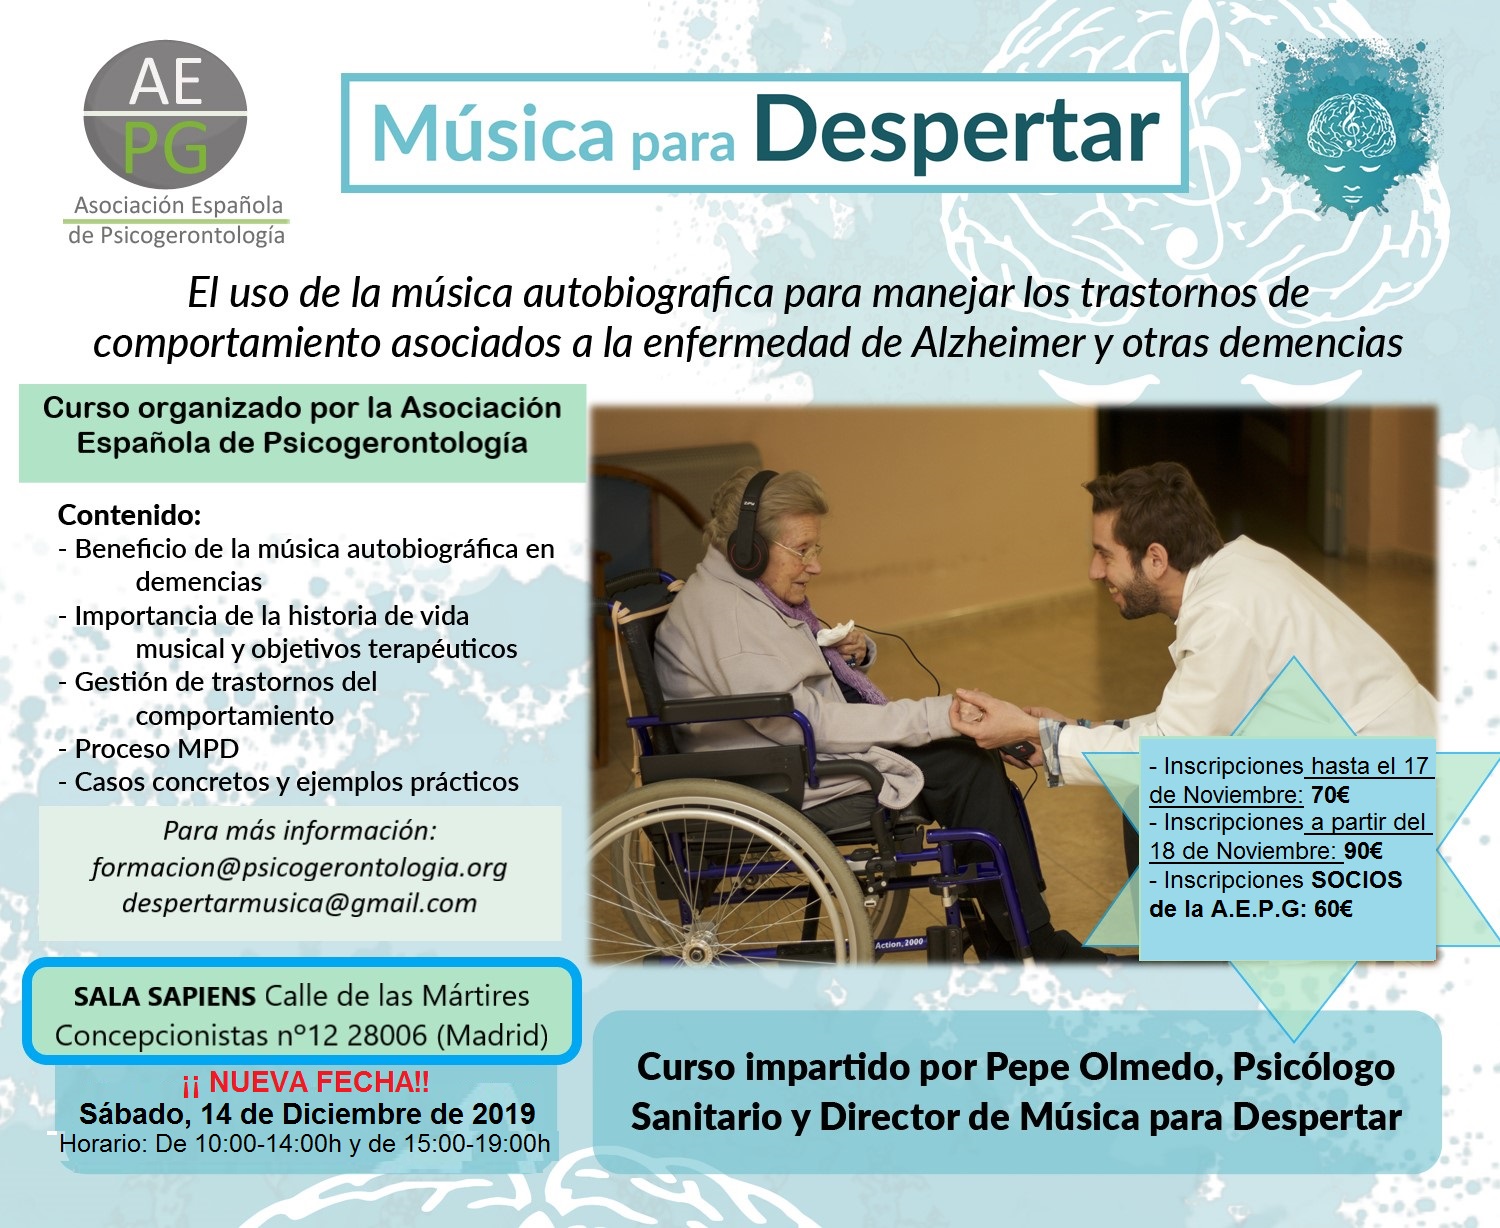 NOVEDAD: Curso "Música para Despertar" organizado por la AEPG - Española de Psicogerontología